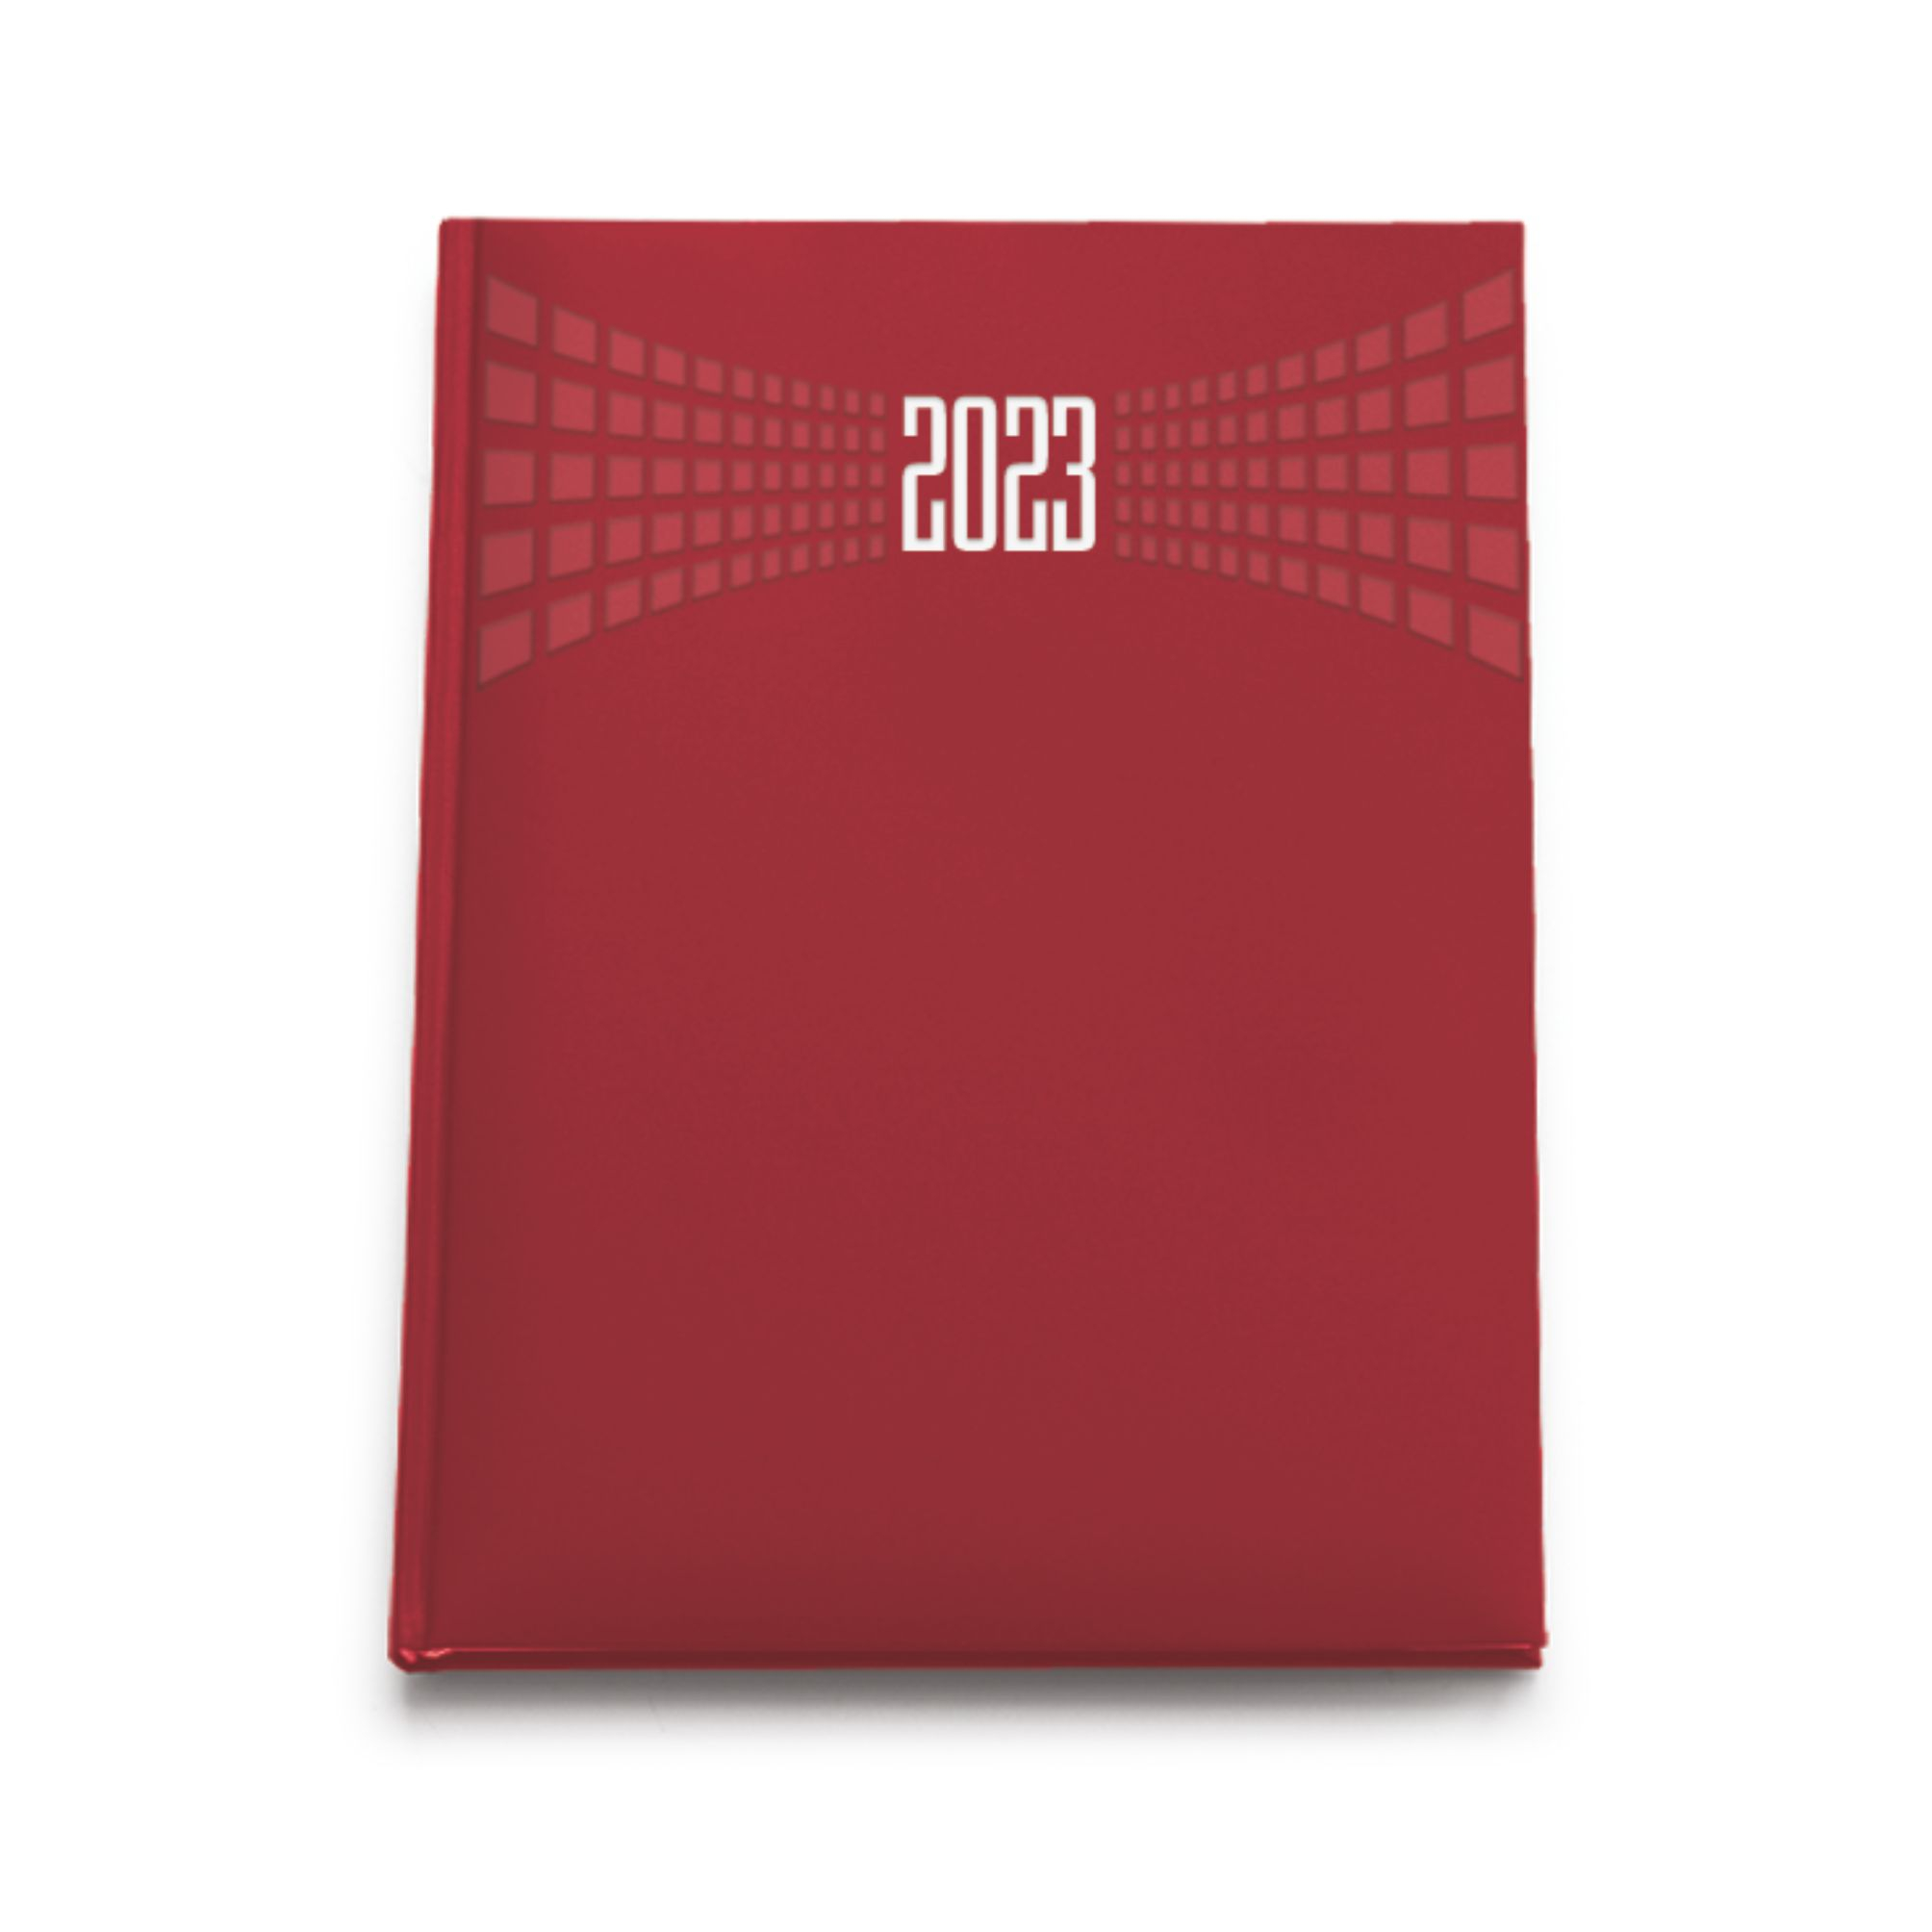 0183-agenda-giornaliera-matra-cm-11x17-rosso.jpg